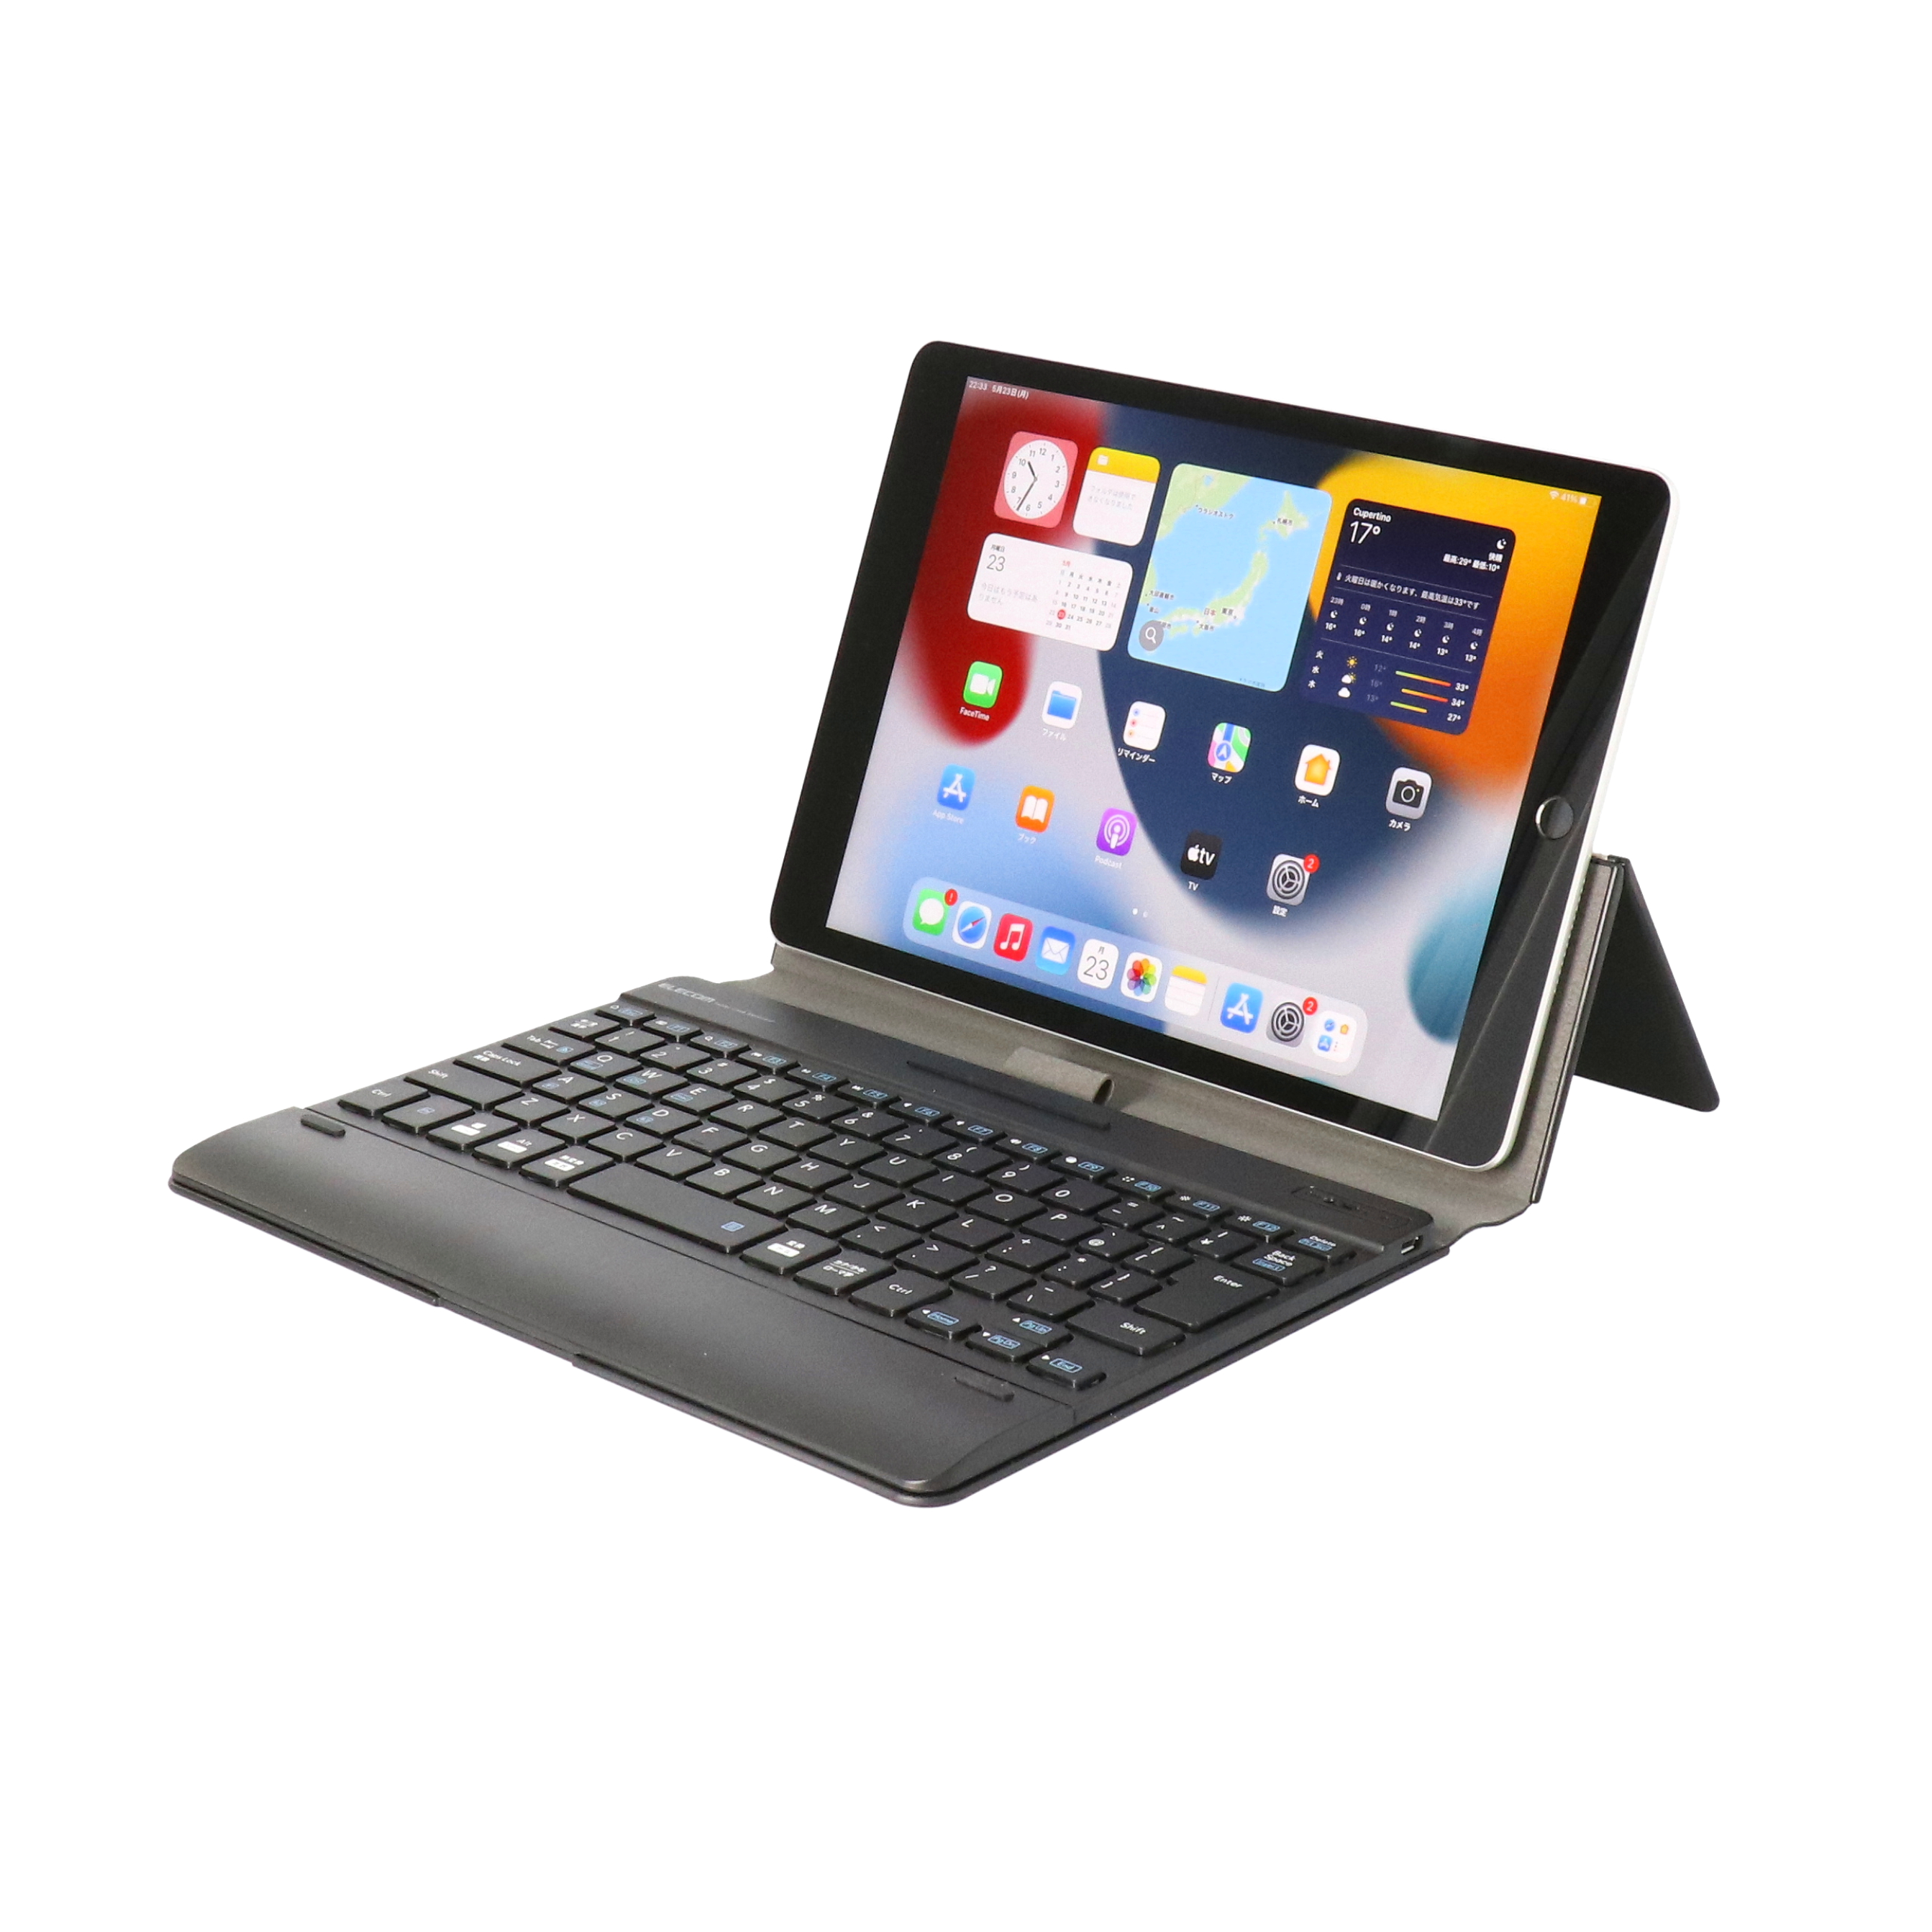 Apple ※iPad Pro 11 超薄レザーケース付き Bluetooth キーボード兼スタンド兼カバー☆US配列☆かな入力対応☆ローズゴールド